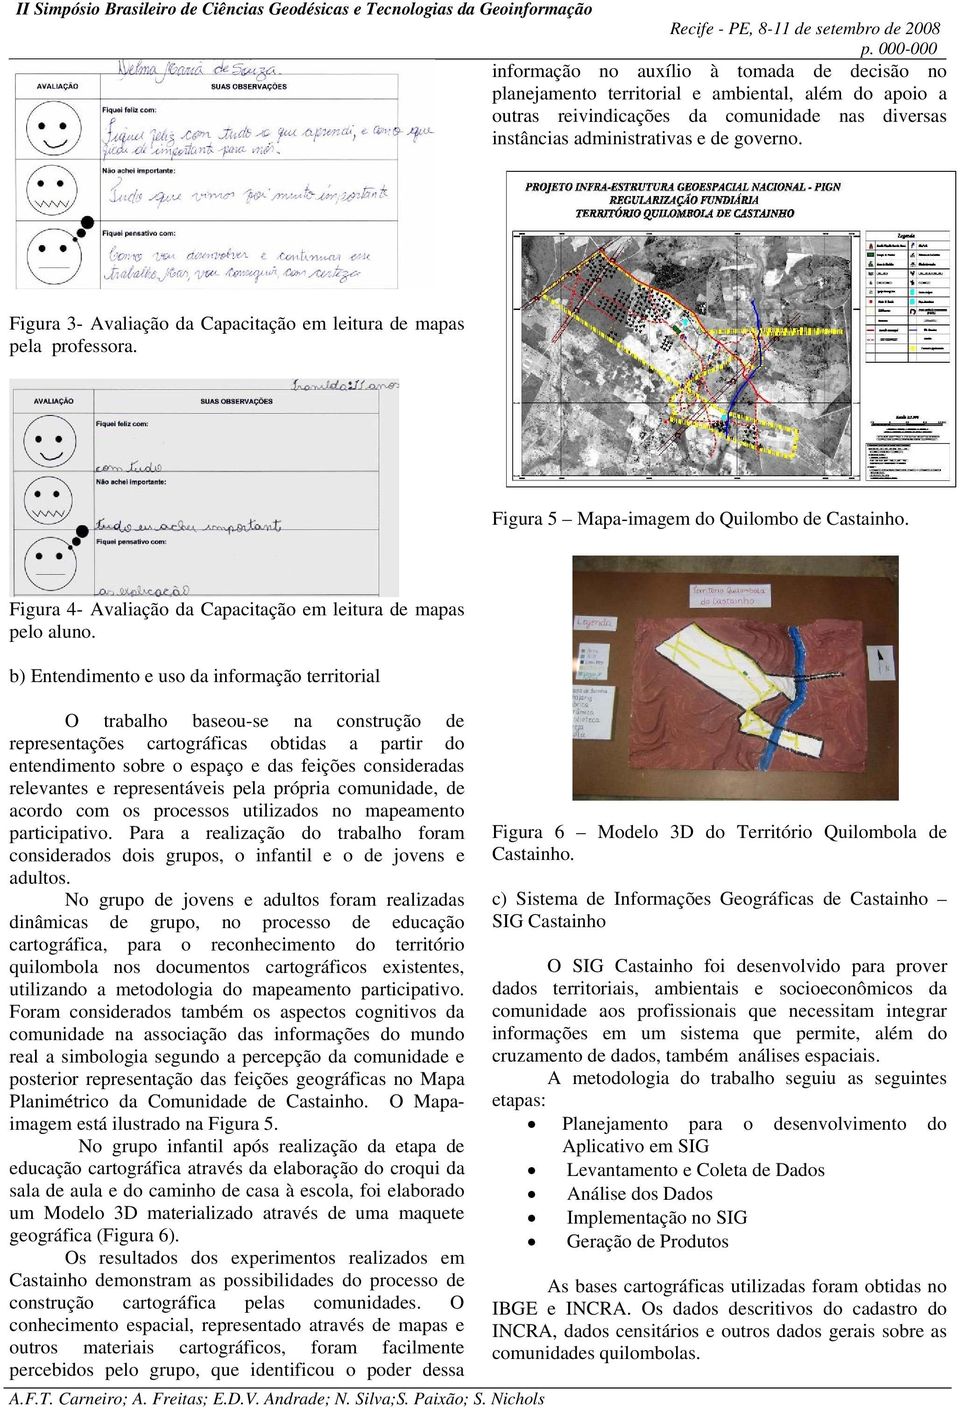 b) Entendimento e uso da informação territorial O trabalho baseou-se na construção de representações cartográficas obtidas a partir do entendimento sobre o espaço e das feições consideradas